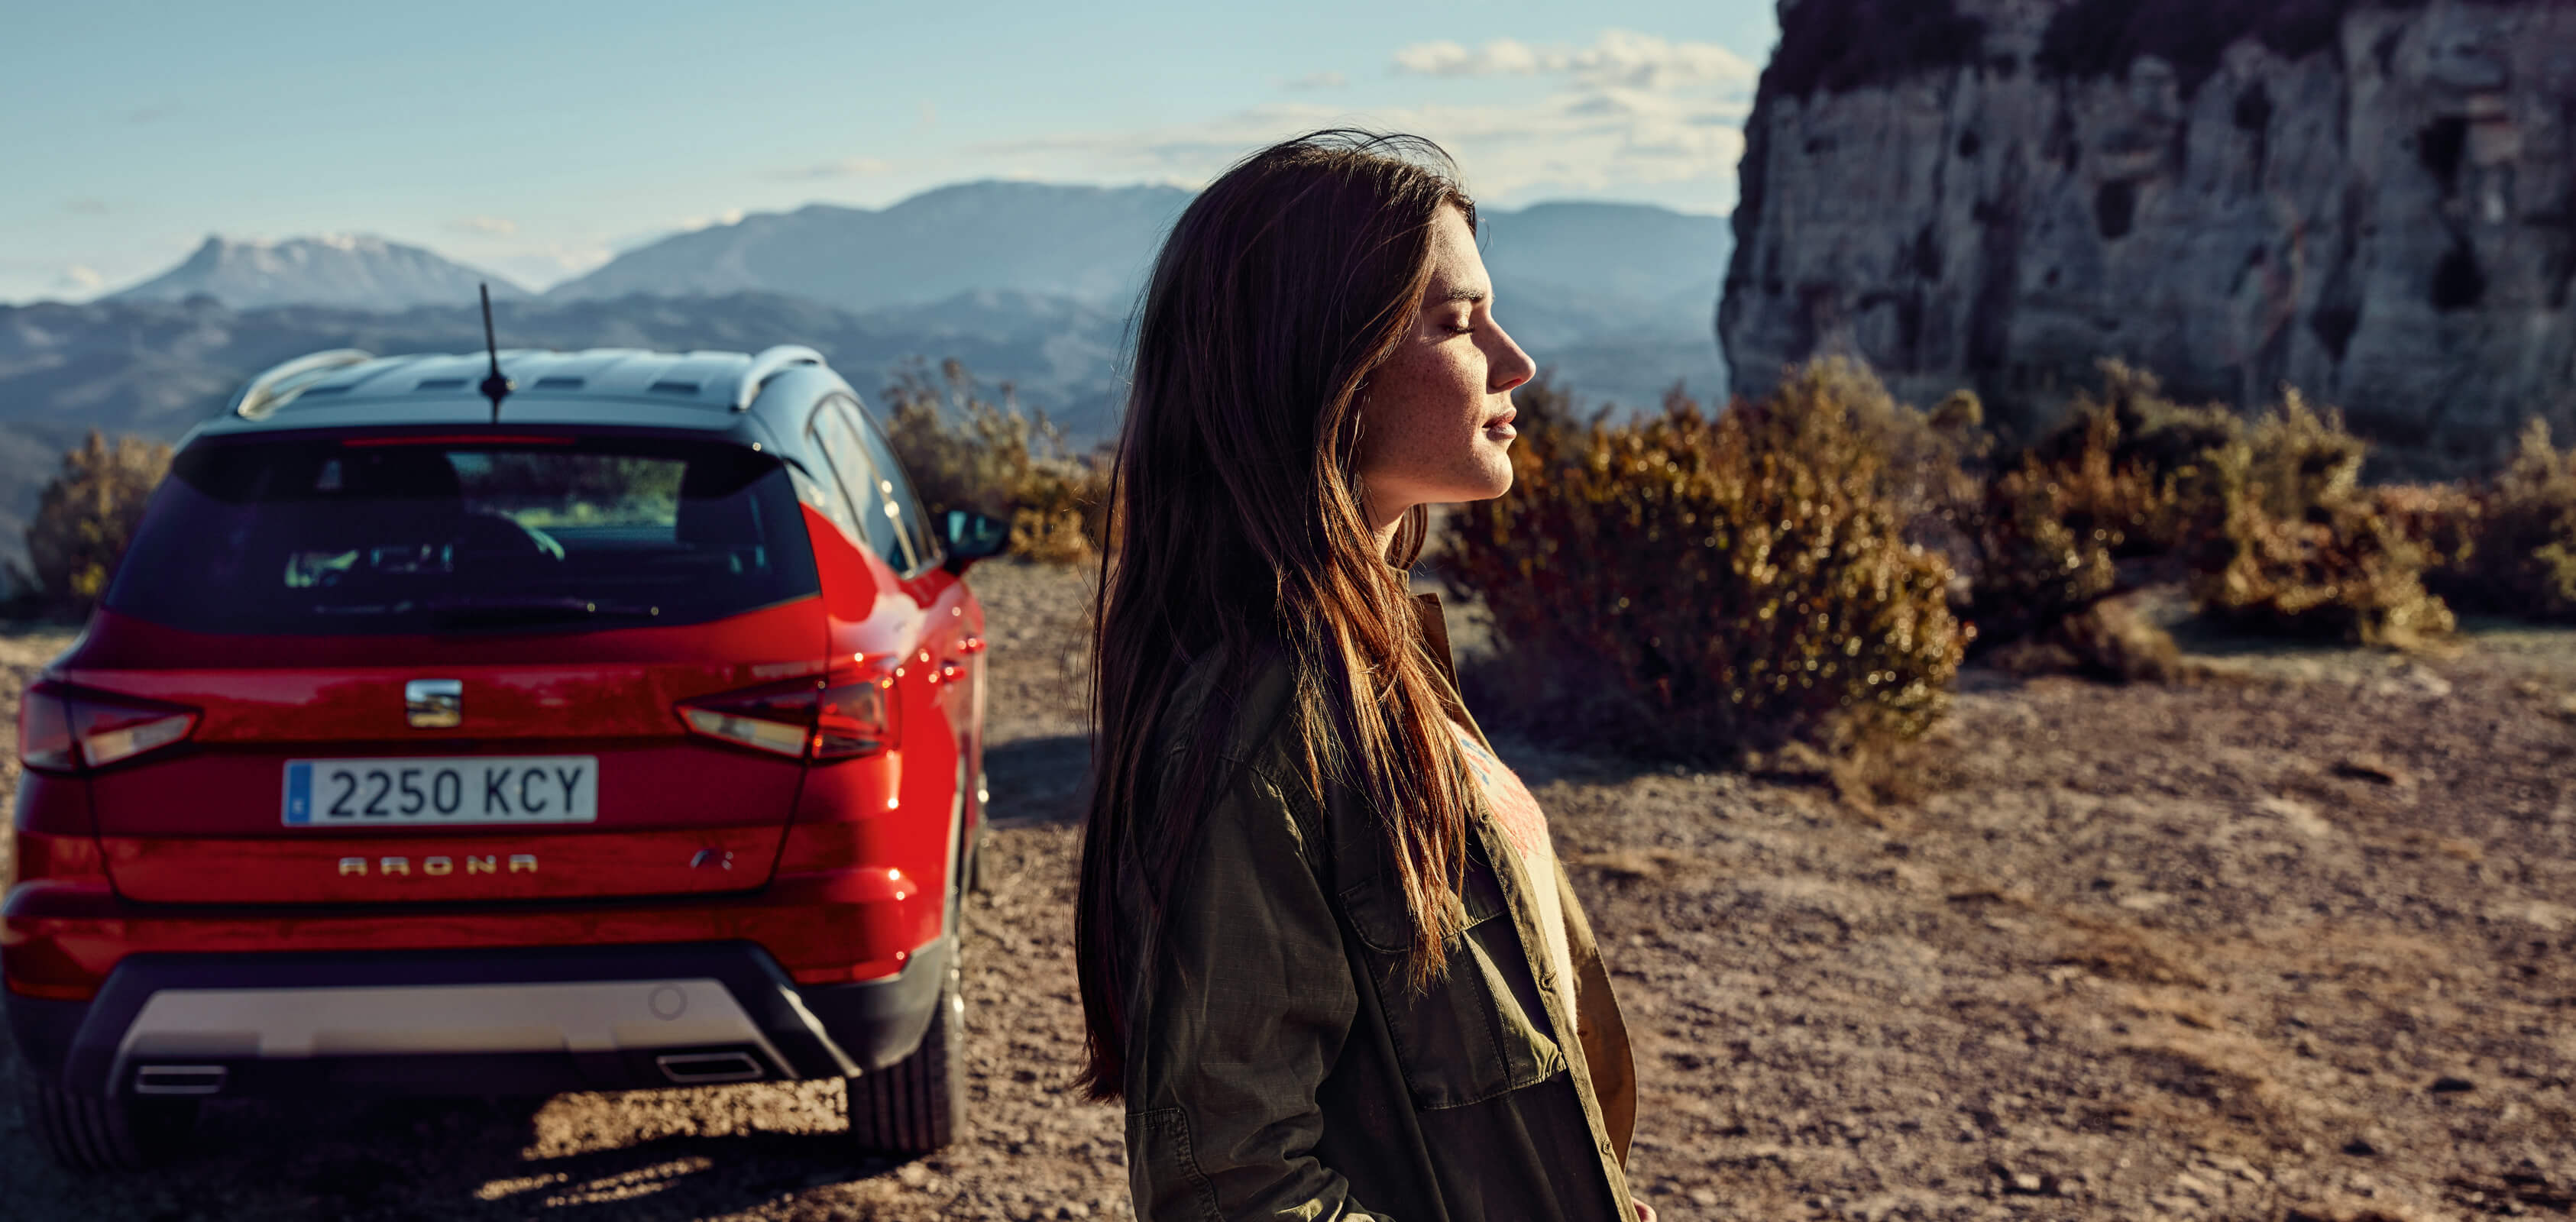 SEATi uute autode teenused – kõrbesse pargitud SEAT Arona crossover SUV tagantvaade koos naise profiilivaatega